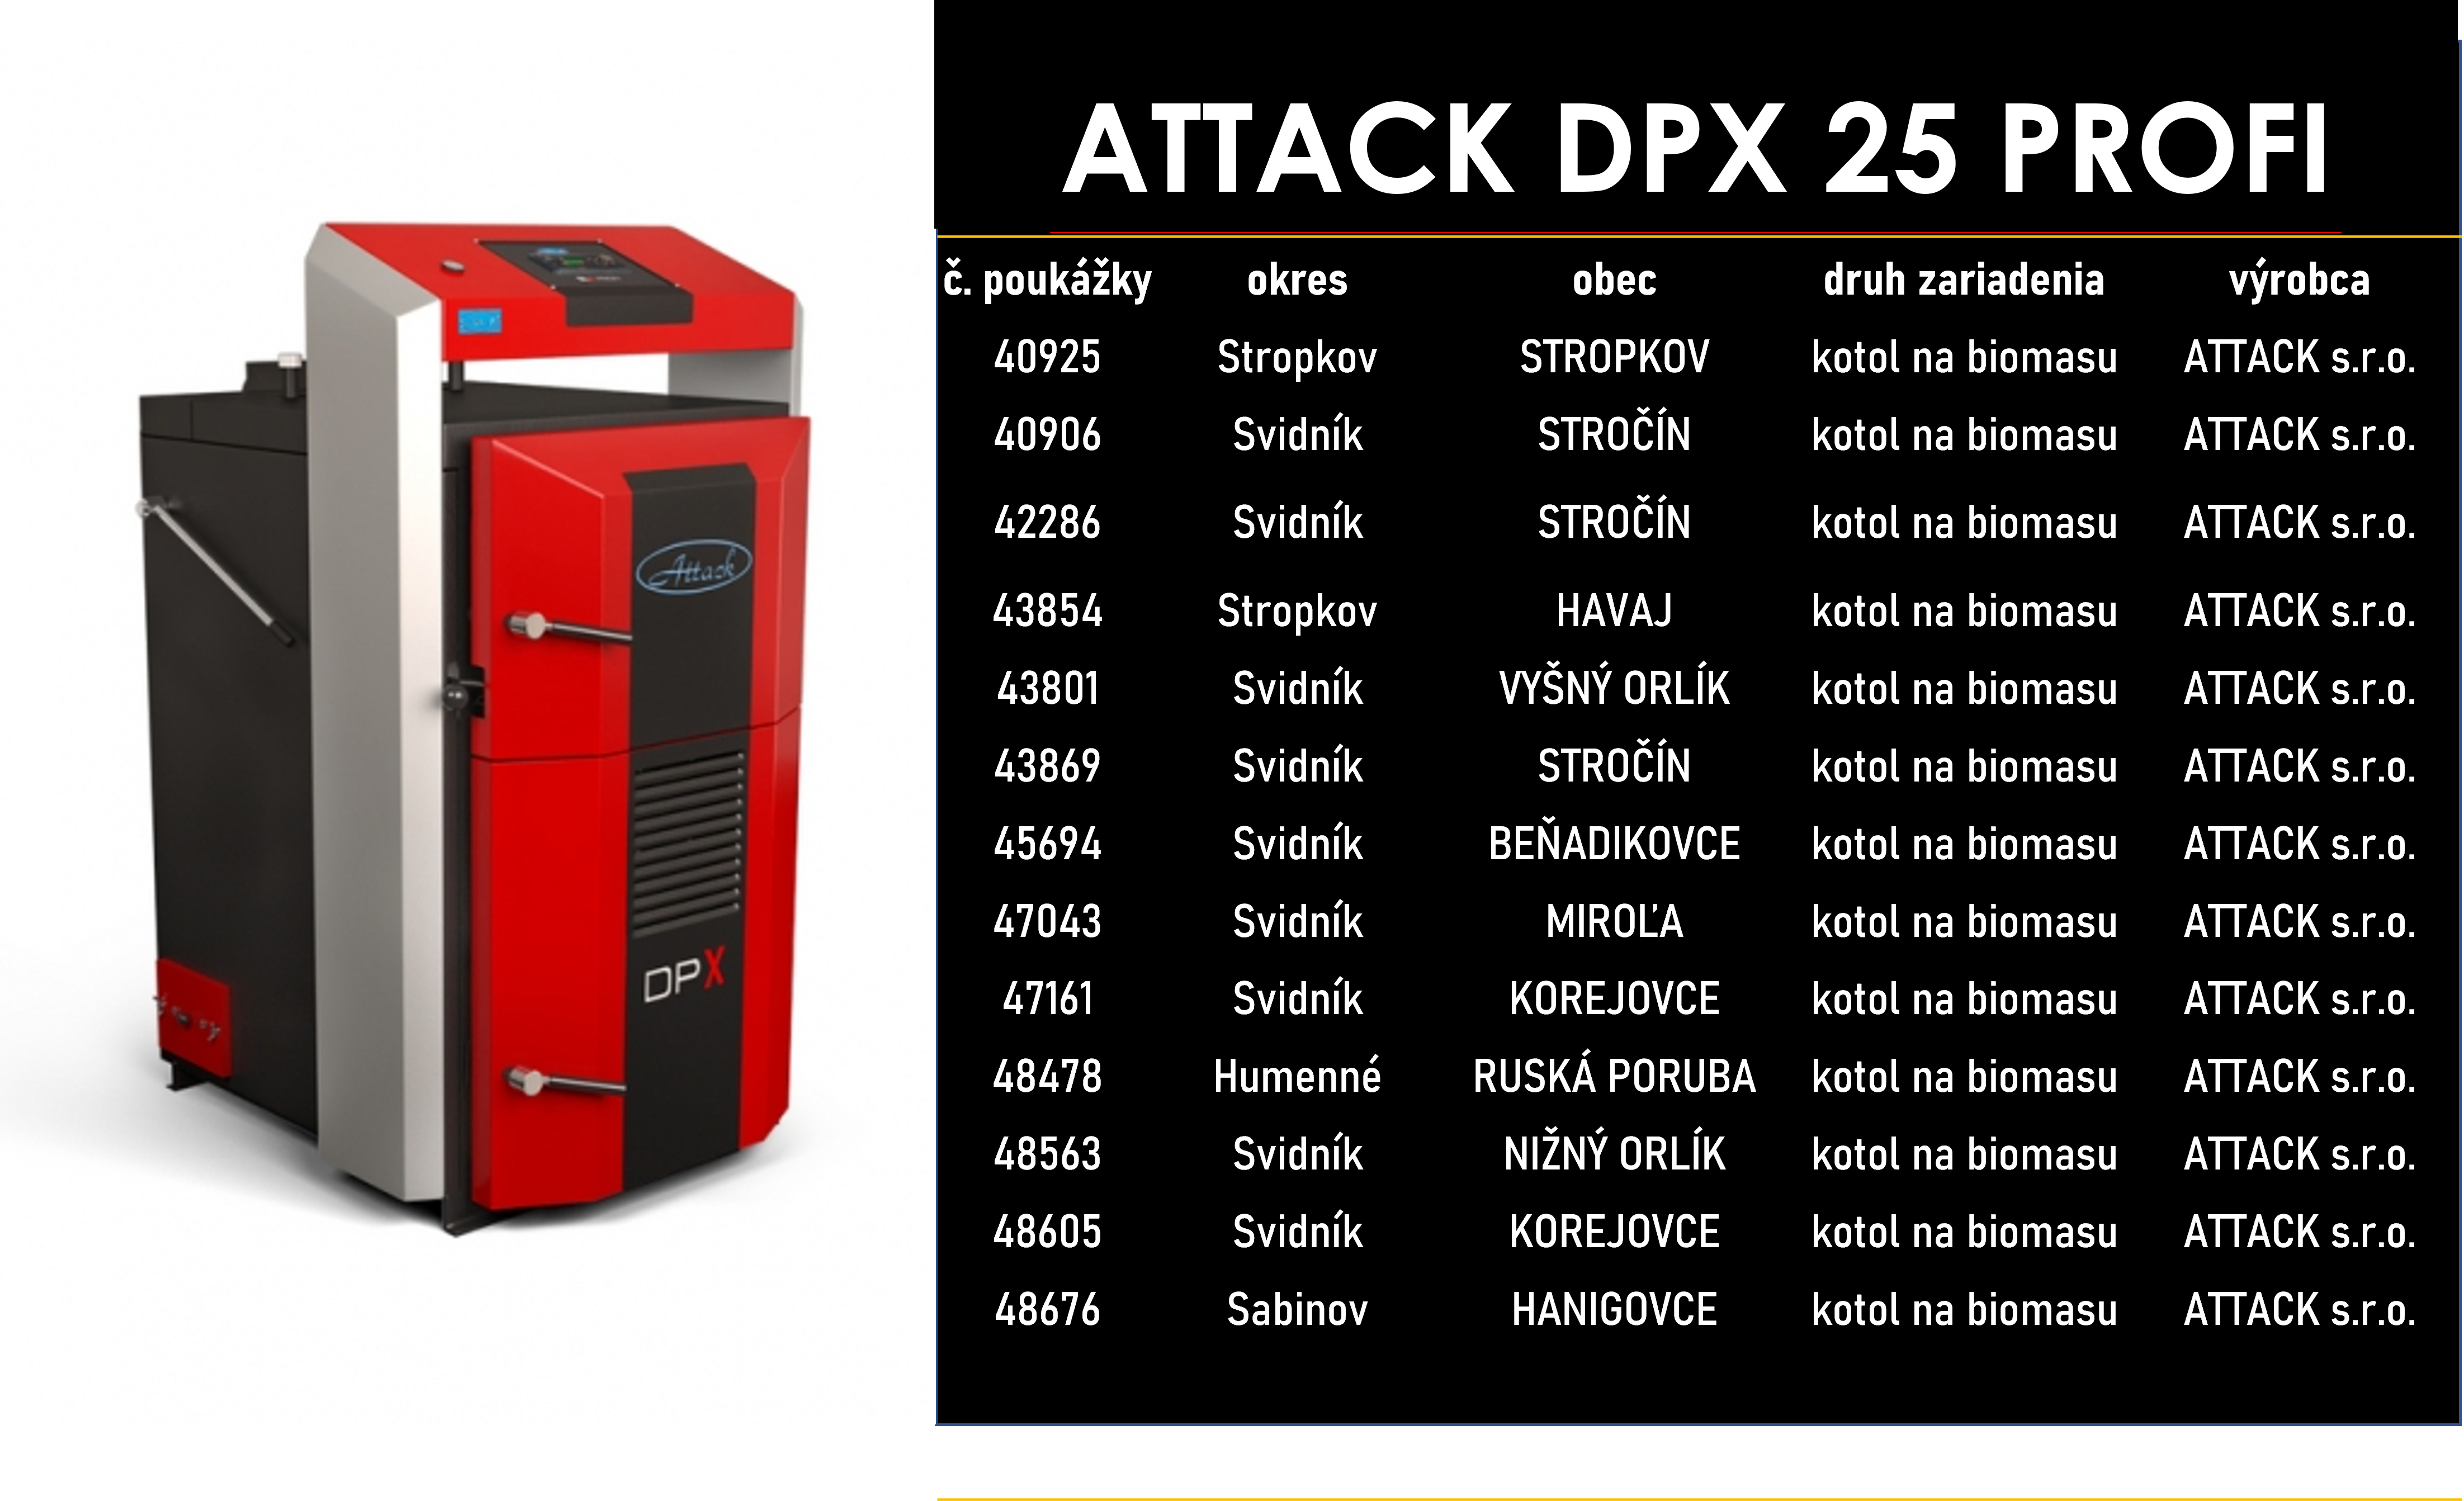 ATTACK DPX 25 PROFI